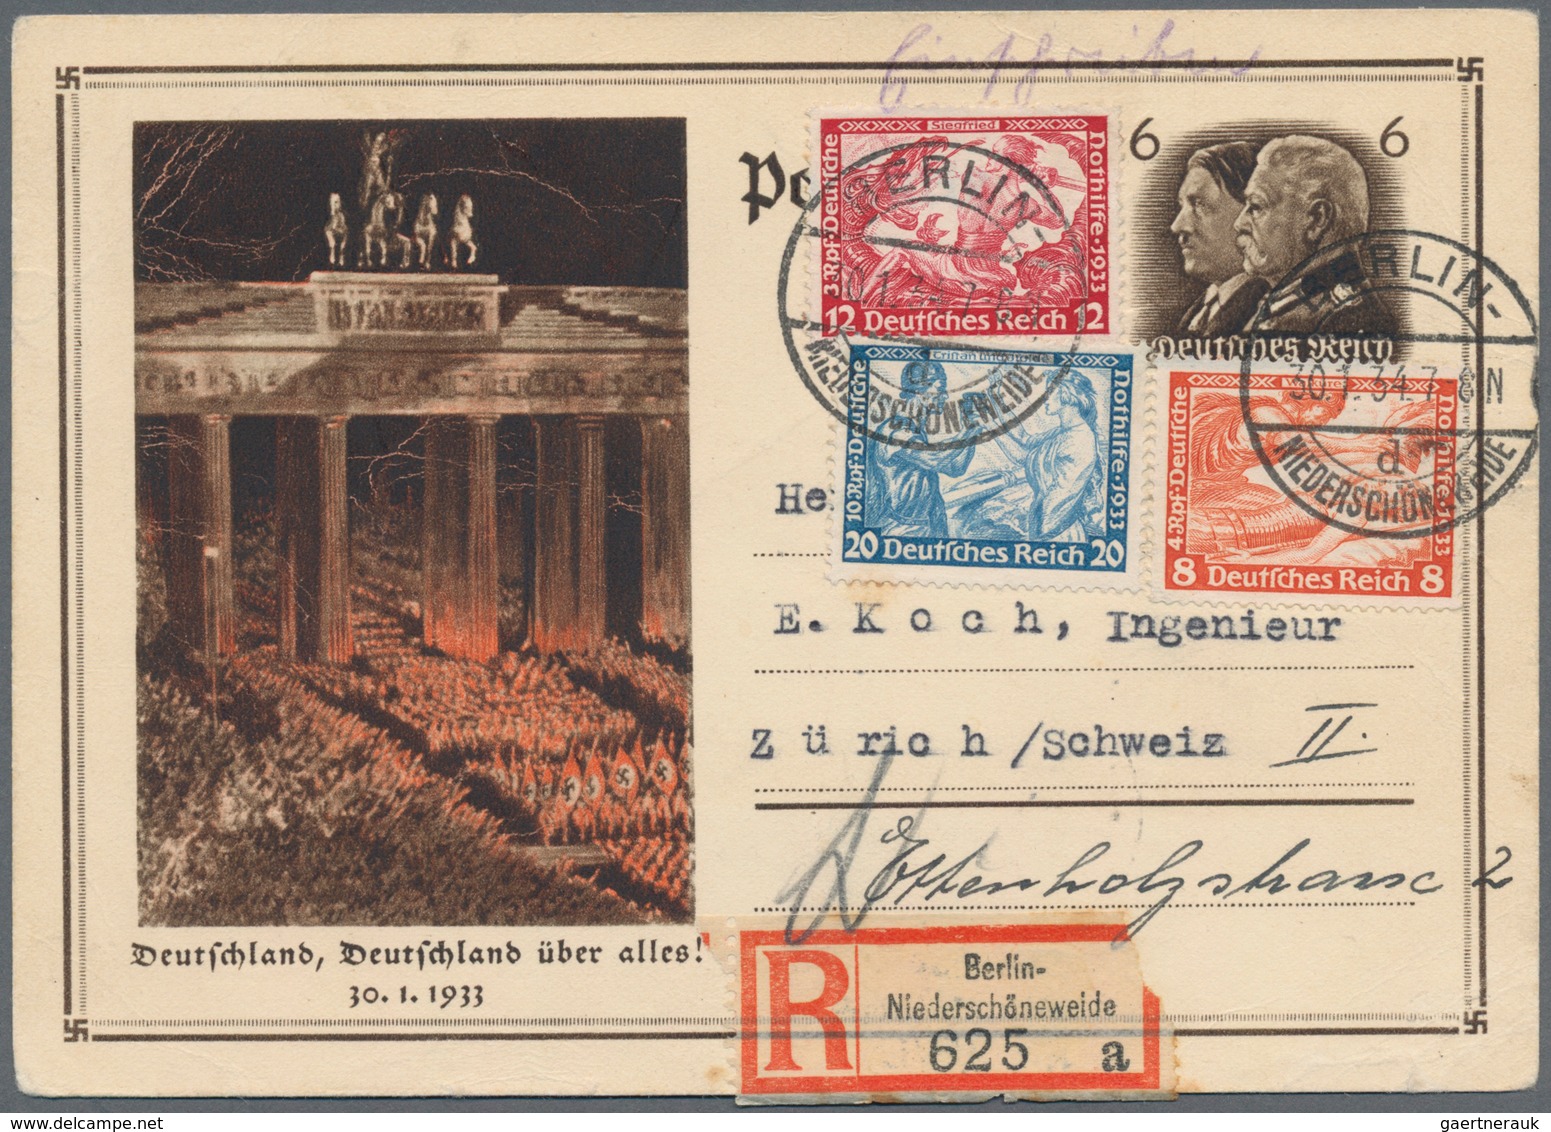 Deutsches Reich - Ganzsachen: 1873/1944 ca., reichhaltiger Sammlungsbestand mit ca.200 Ganzsachen, d